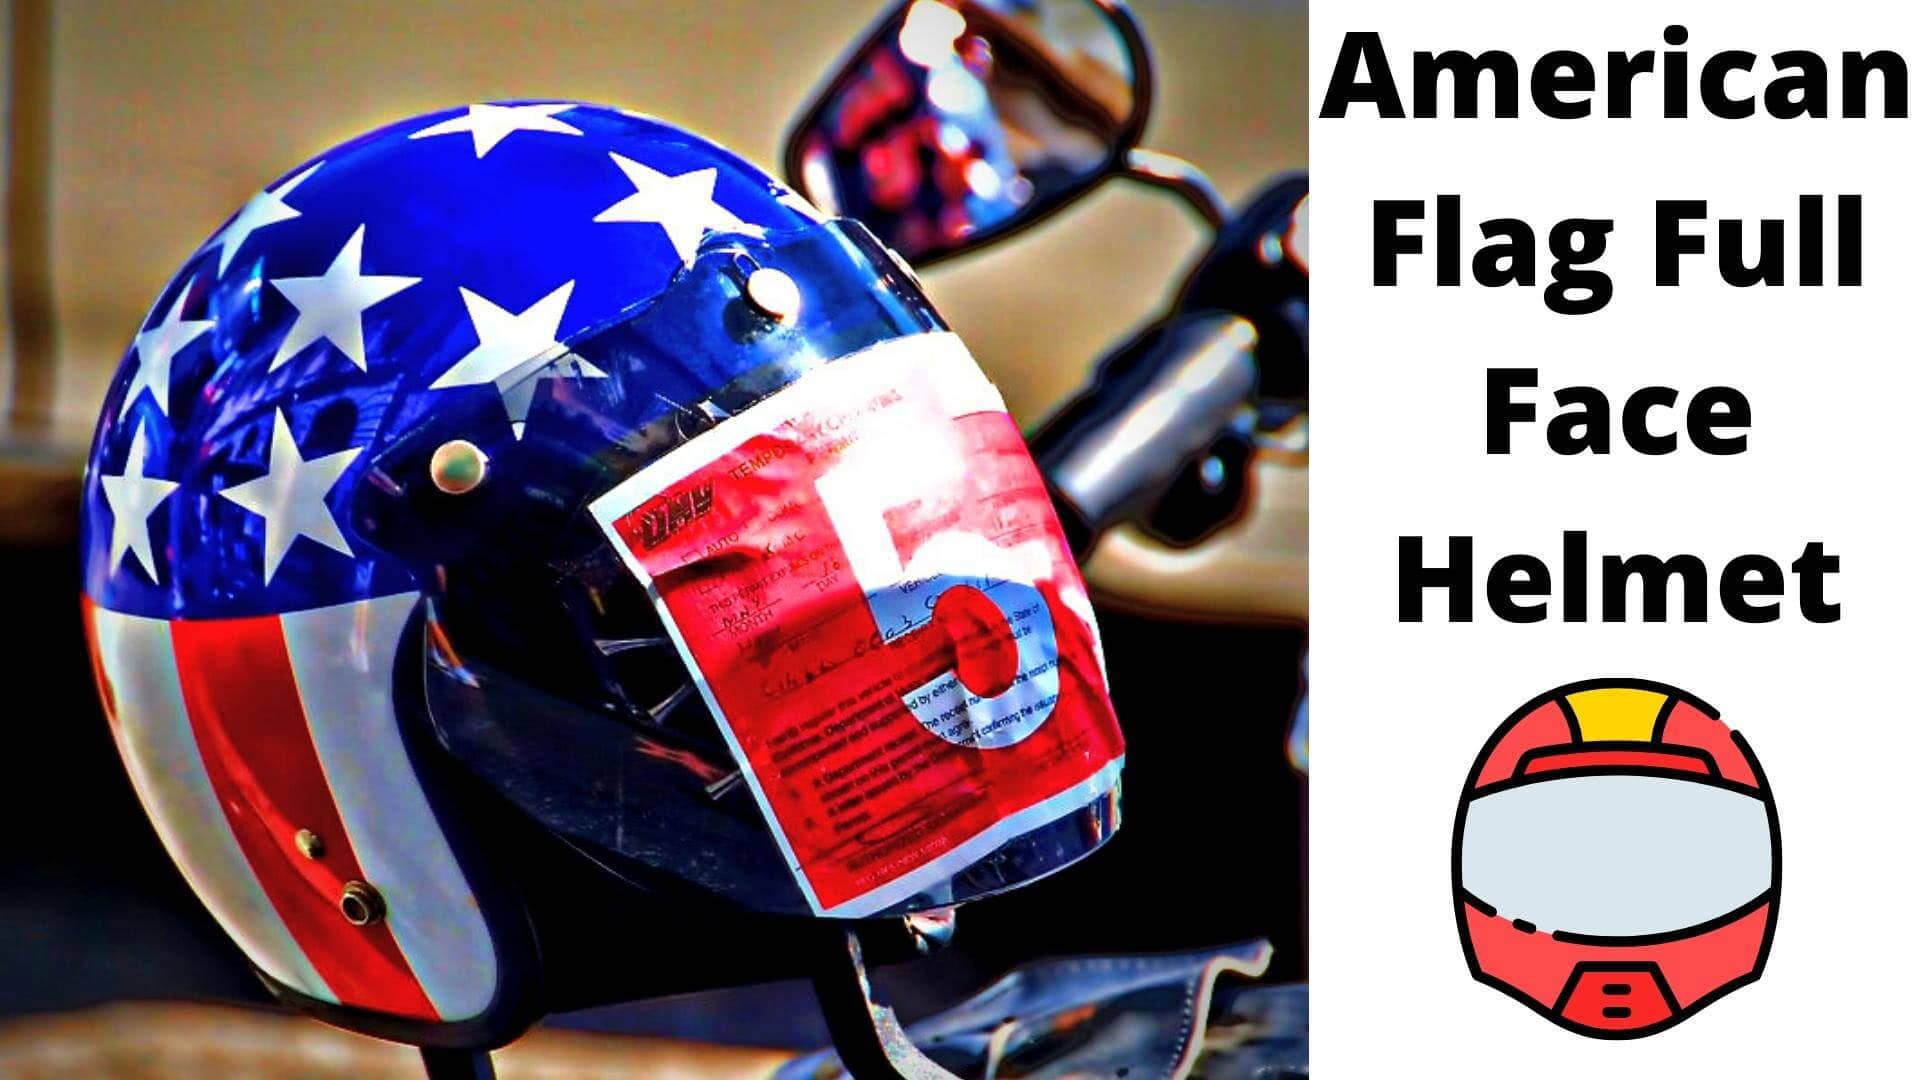 American flag full face helmet